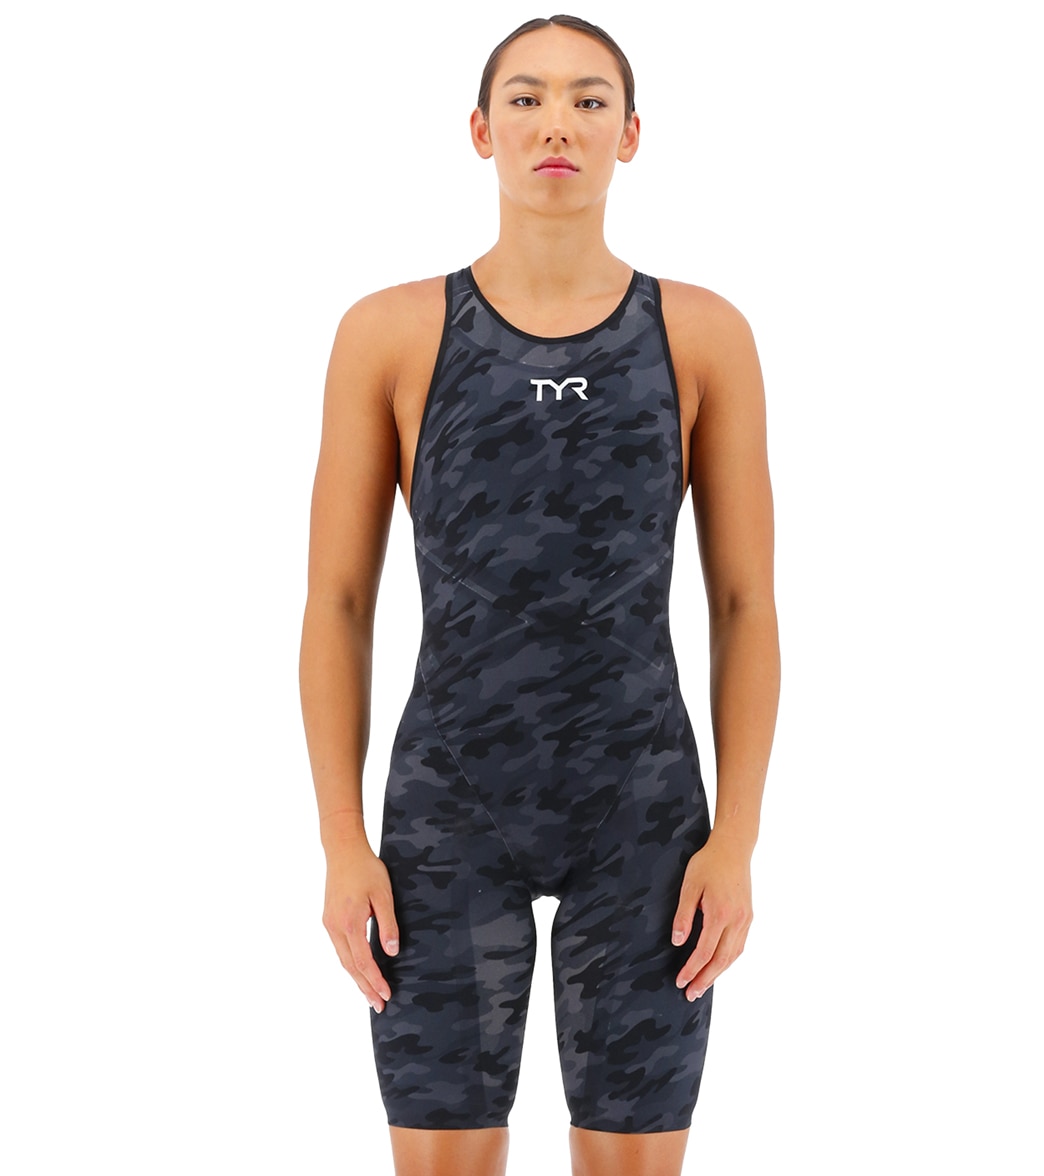 TYR Women's Venzo Camo Closed Back Tech Suit Swimsuit - Black 23 - Swimoutlet.com